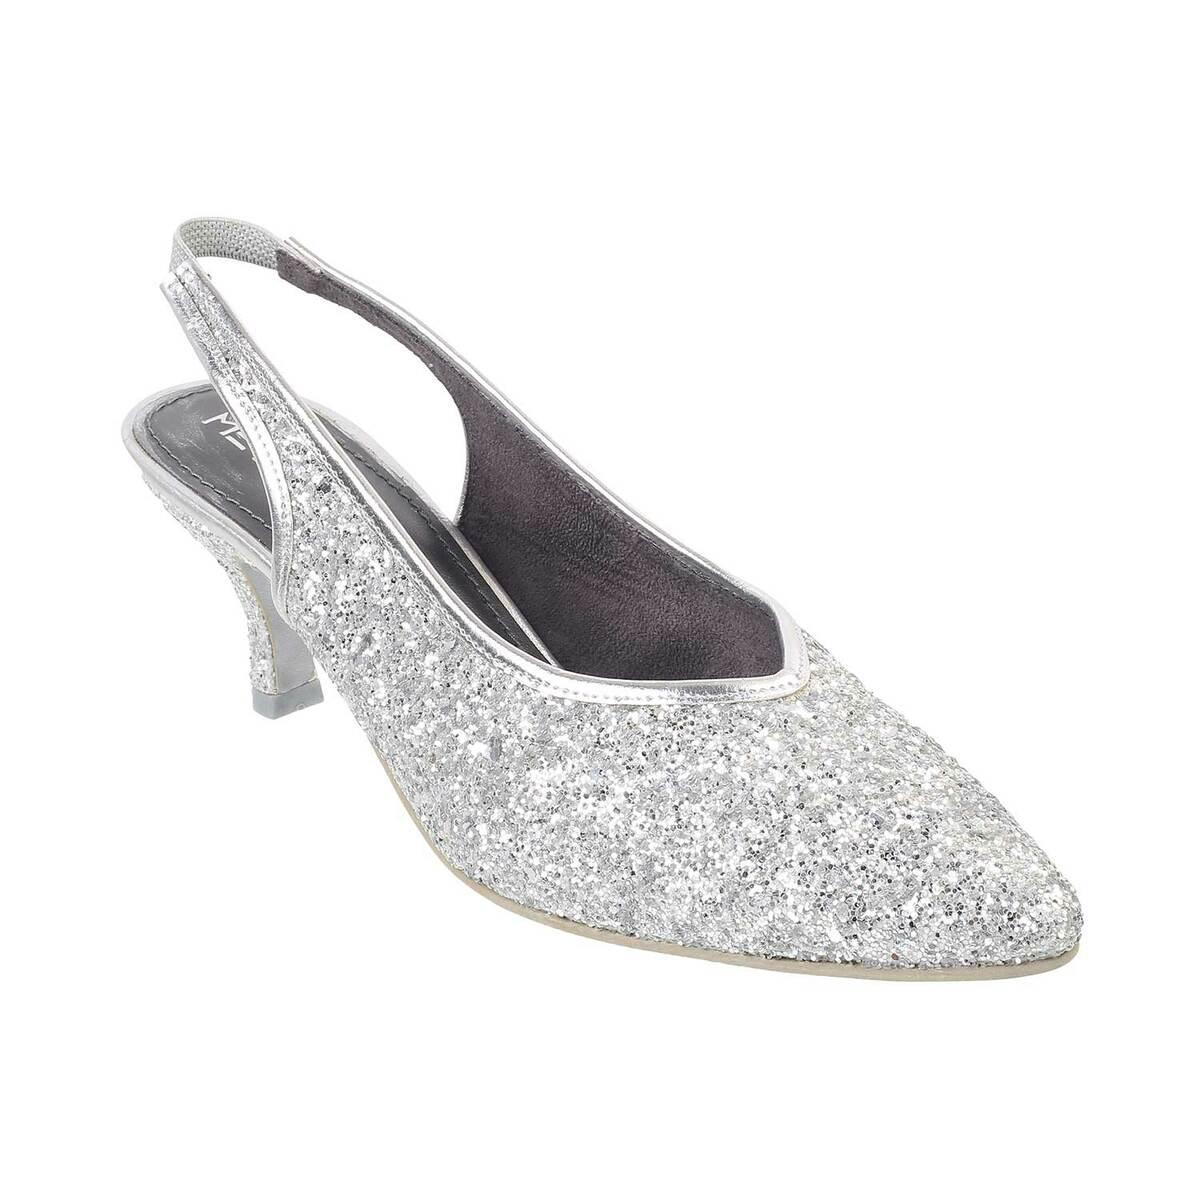 Pearl Ankle Strap Block Heel Wedding Shoes | Wedding shoes heels, Closed  toe wedding shoes, Comfortable wedding heels